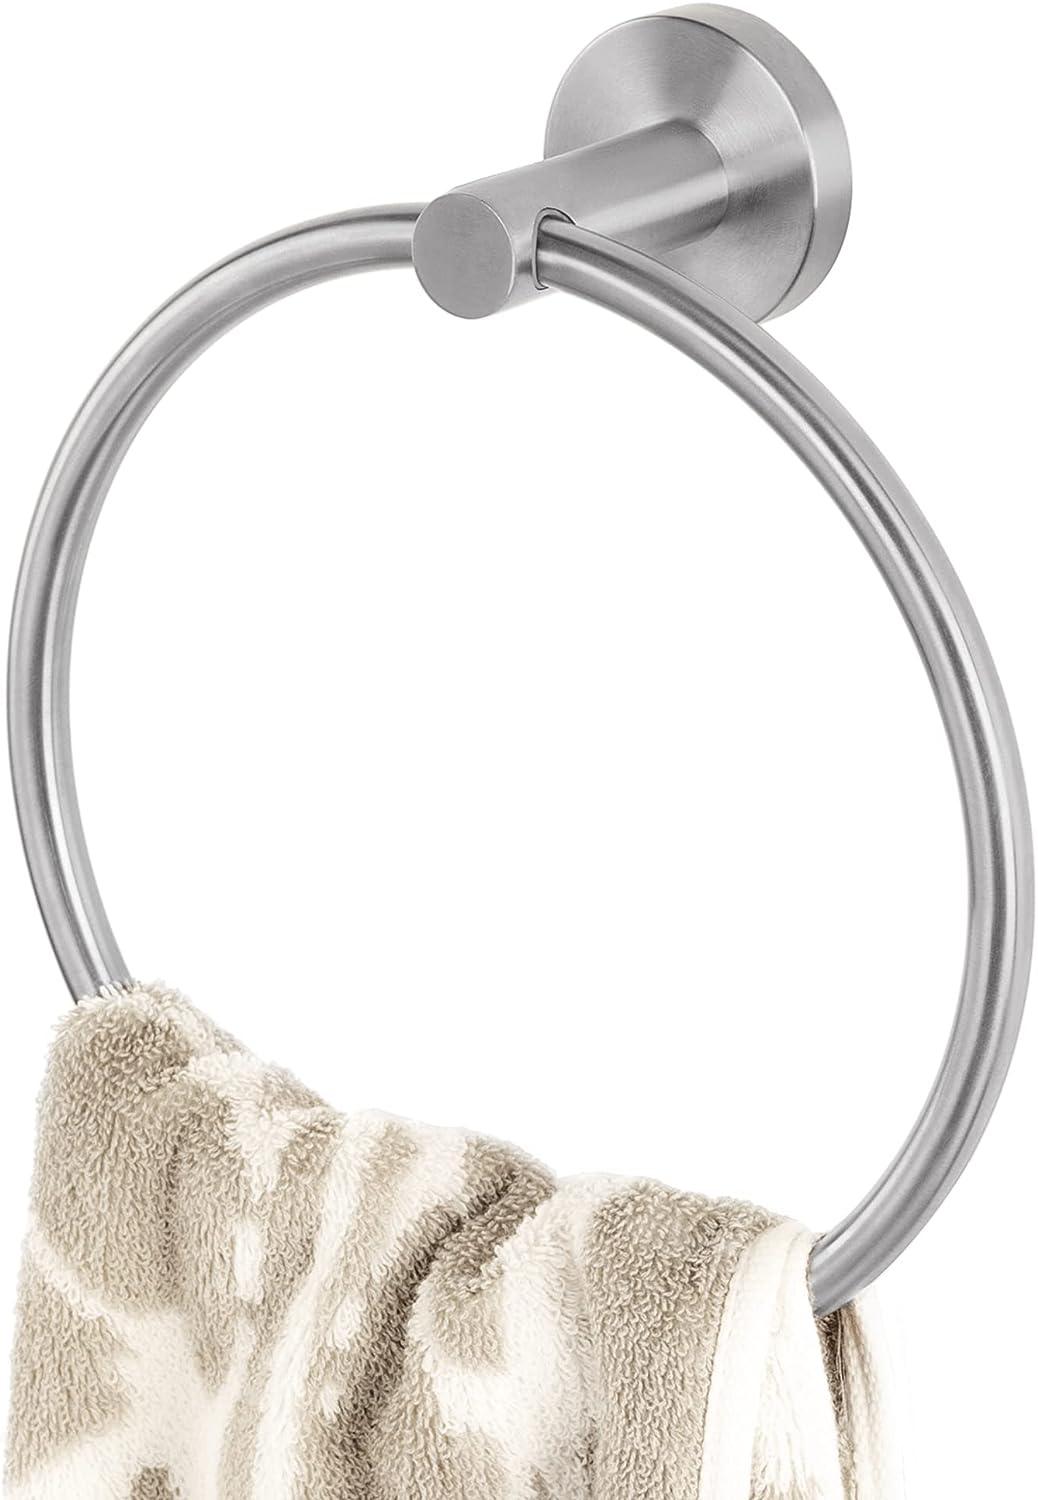 Toallero de mano, soporte autoadhesivo para toallas de baño, soporte para  toallas de mano de acero inoxidable SUS 304 para baño, toallero cepillado